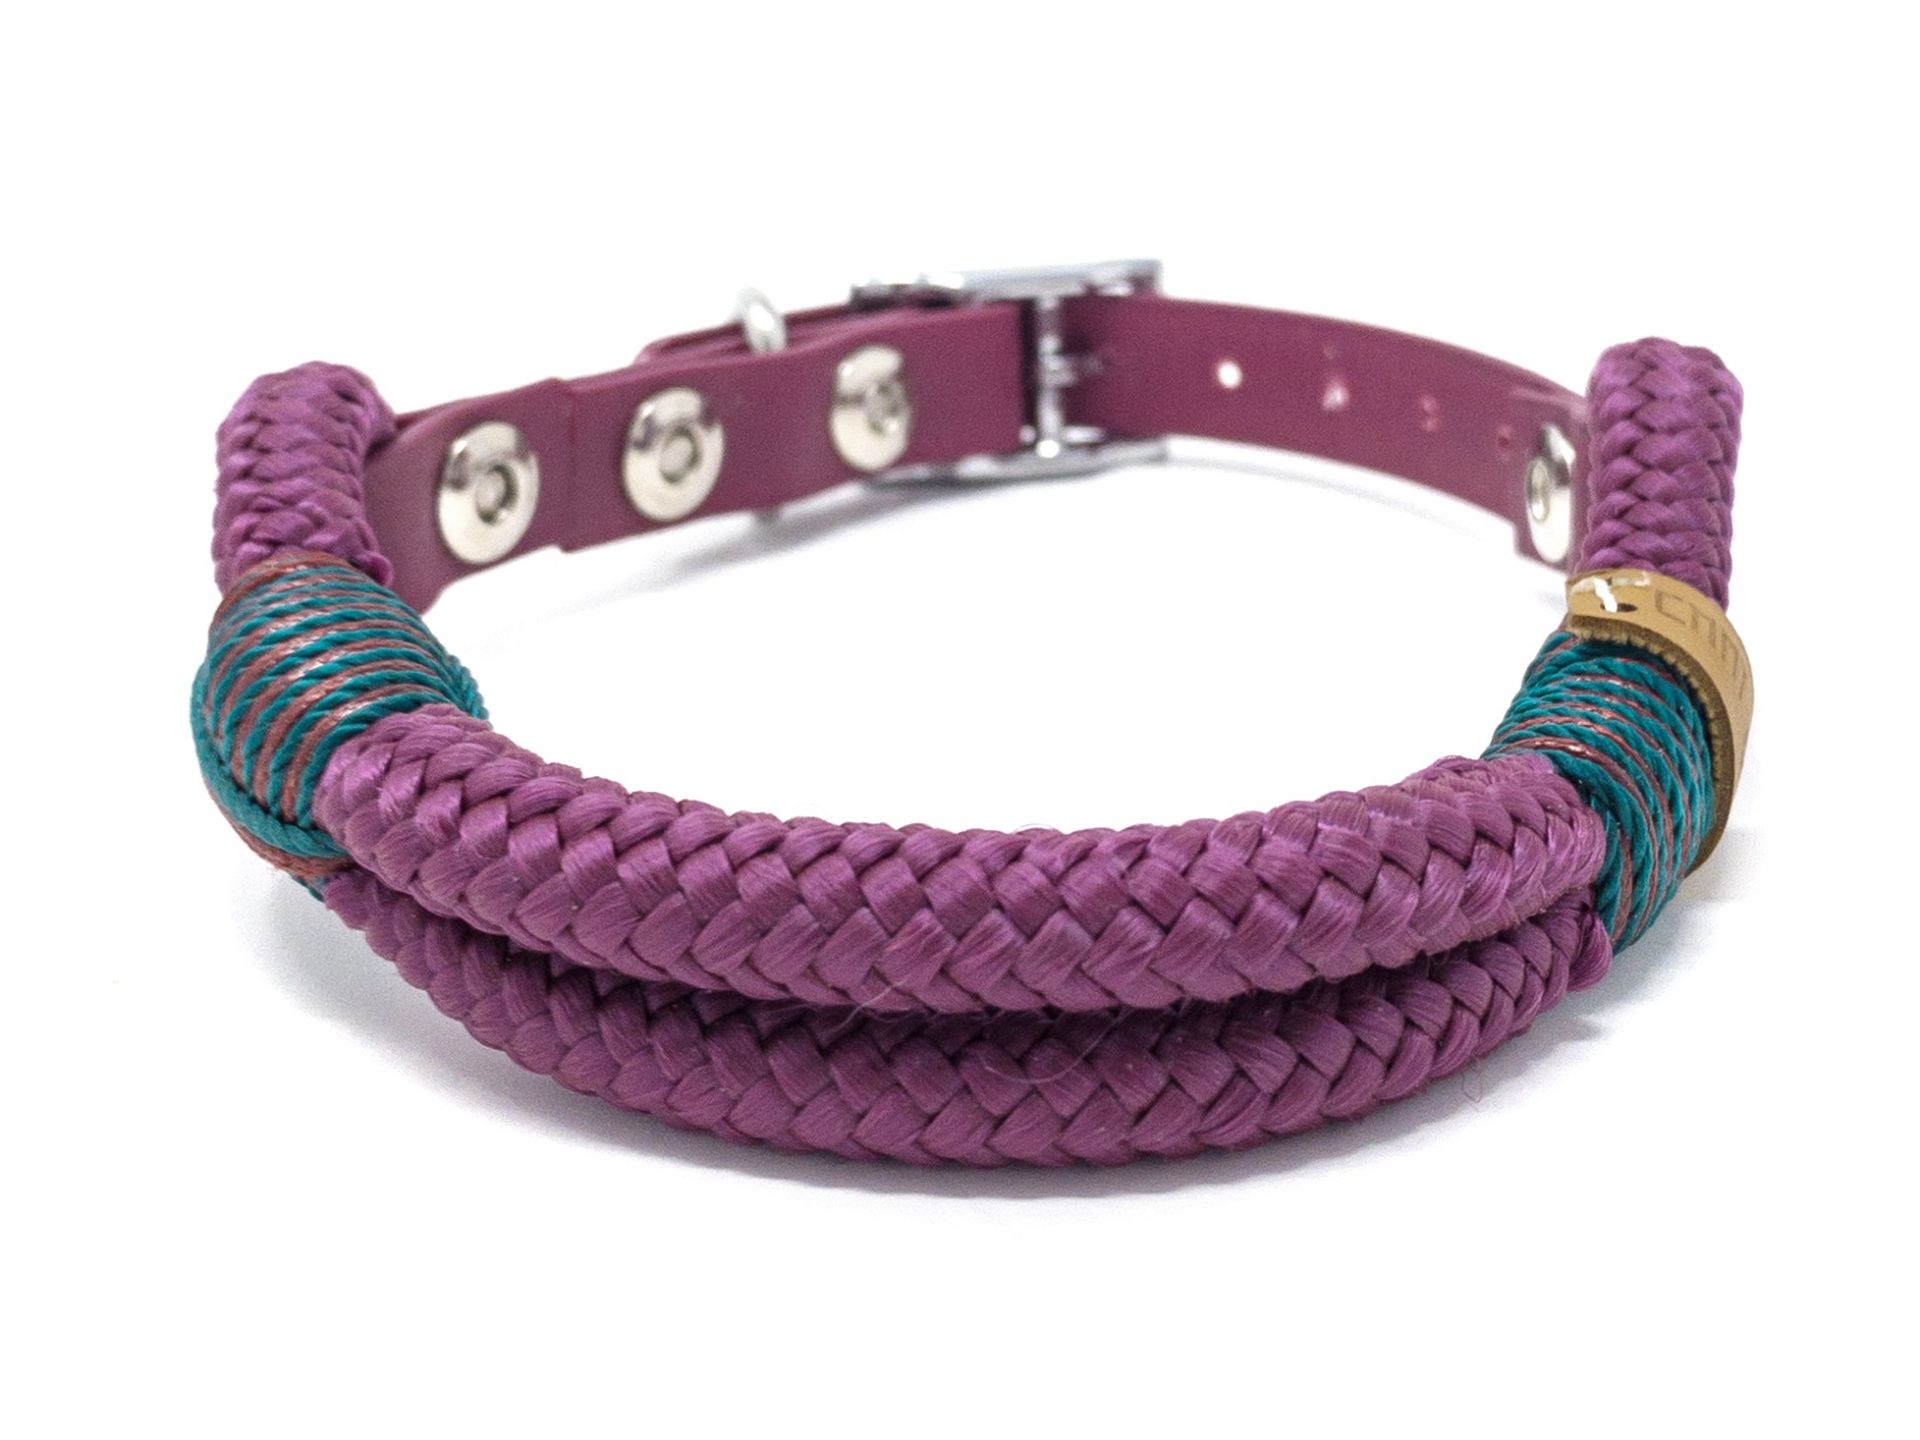 Halsband Hundehalsband Tauhalsband ohne Perlen Vegan Handarbeit abwaschbar verstellbar wasserabweisend robust Gassi gehen silber purple